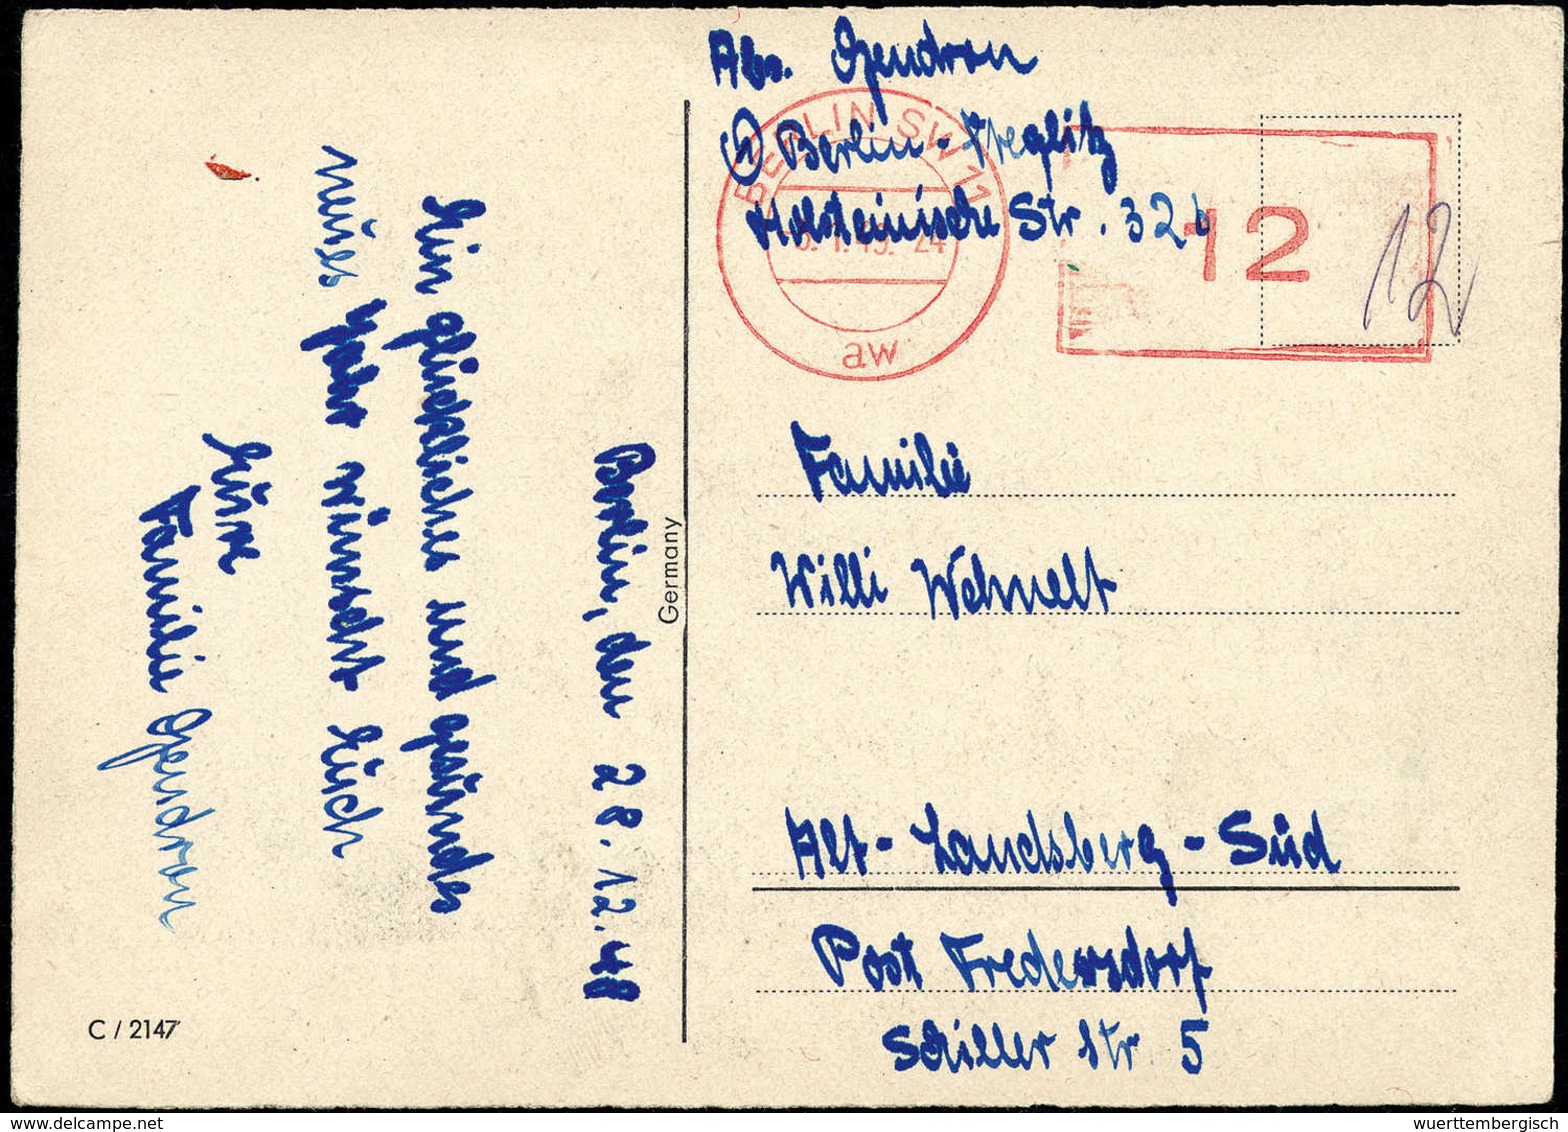 1948, zwölf Briefe mit Gebühr-Bezahlt- bzw. Absender-Freistempel, dabei seltene Provisorien, u.a. BERLIN-WEIDMANNSLUST 1